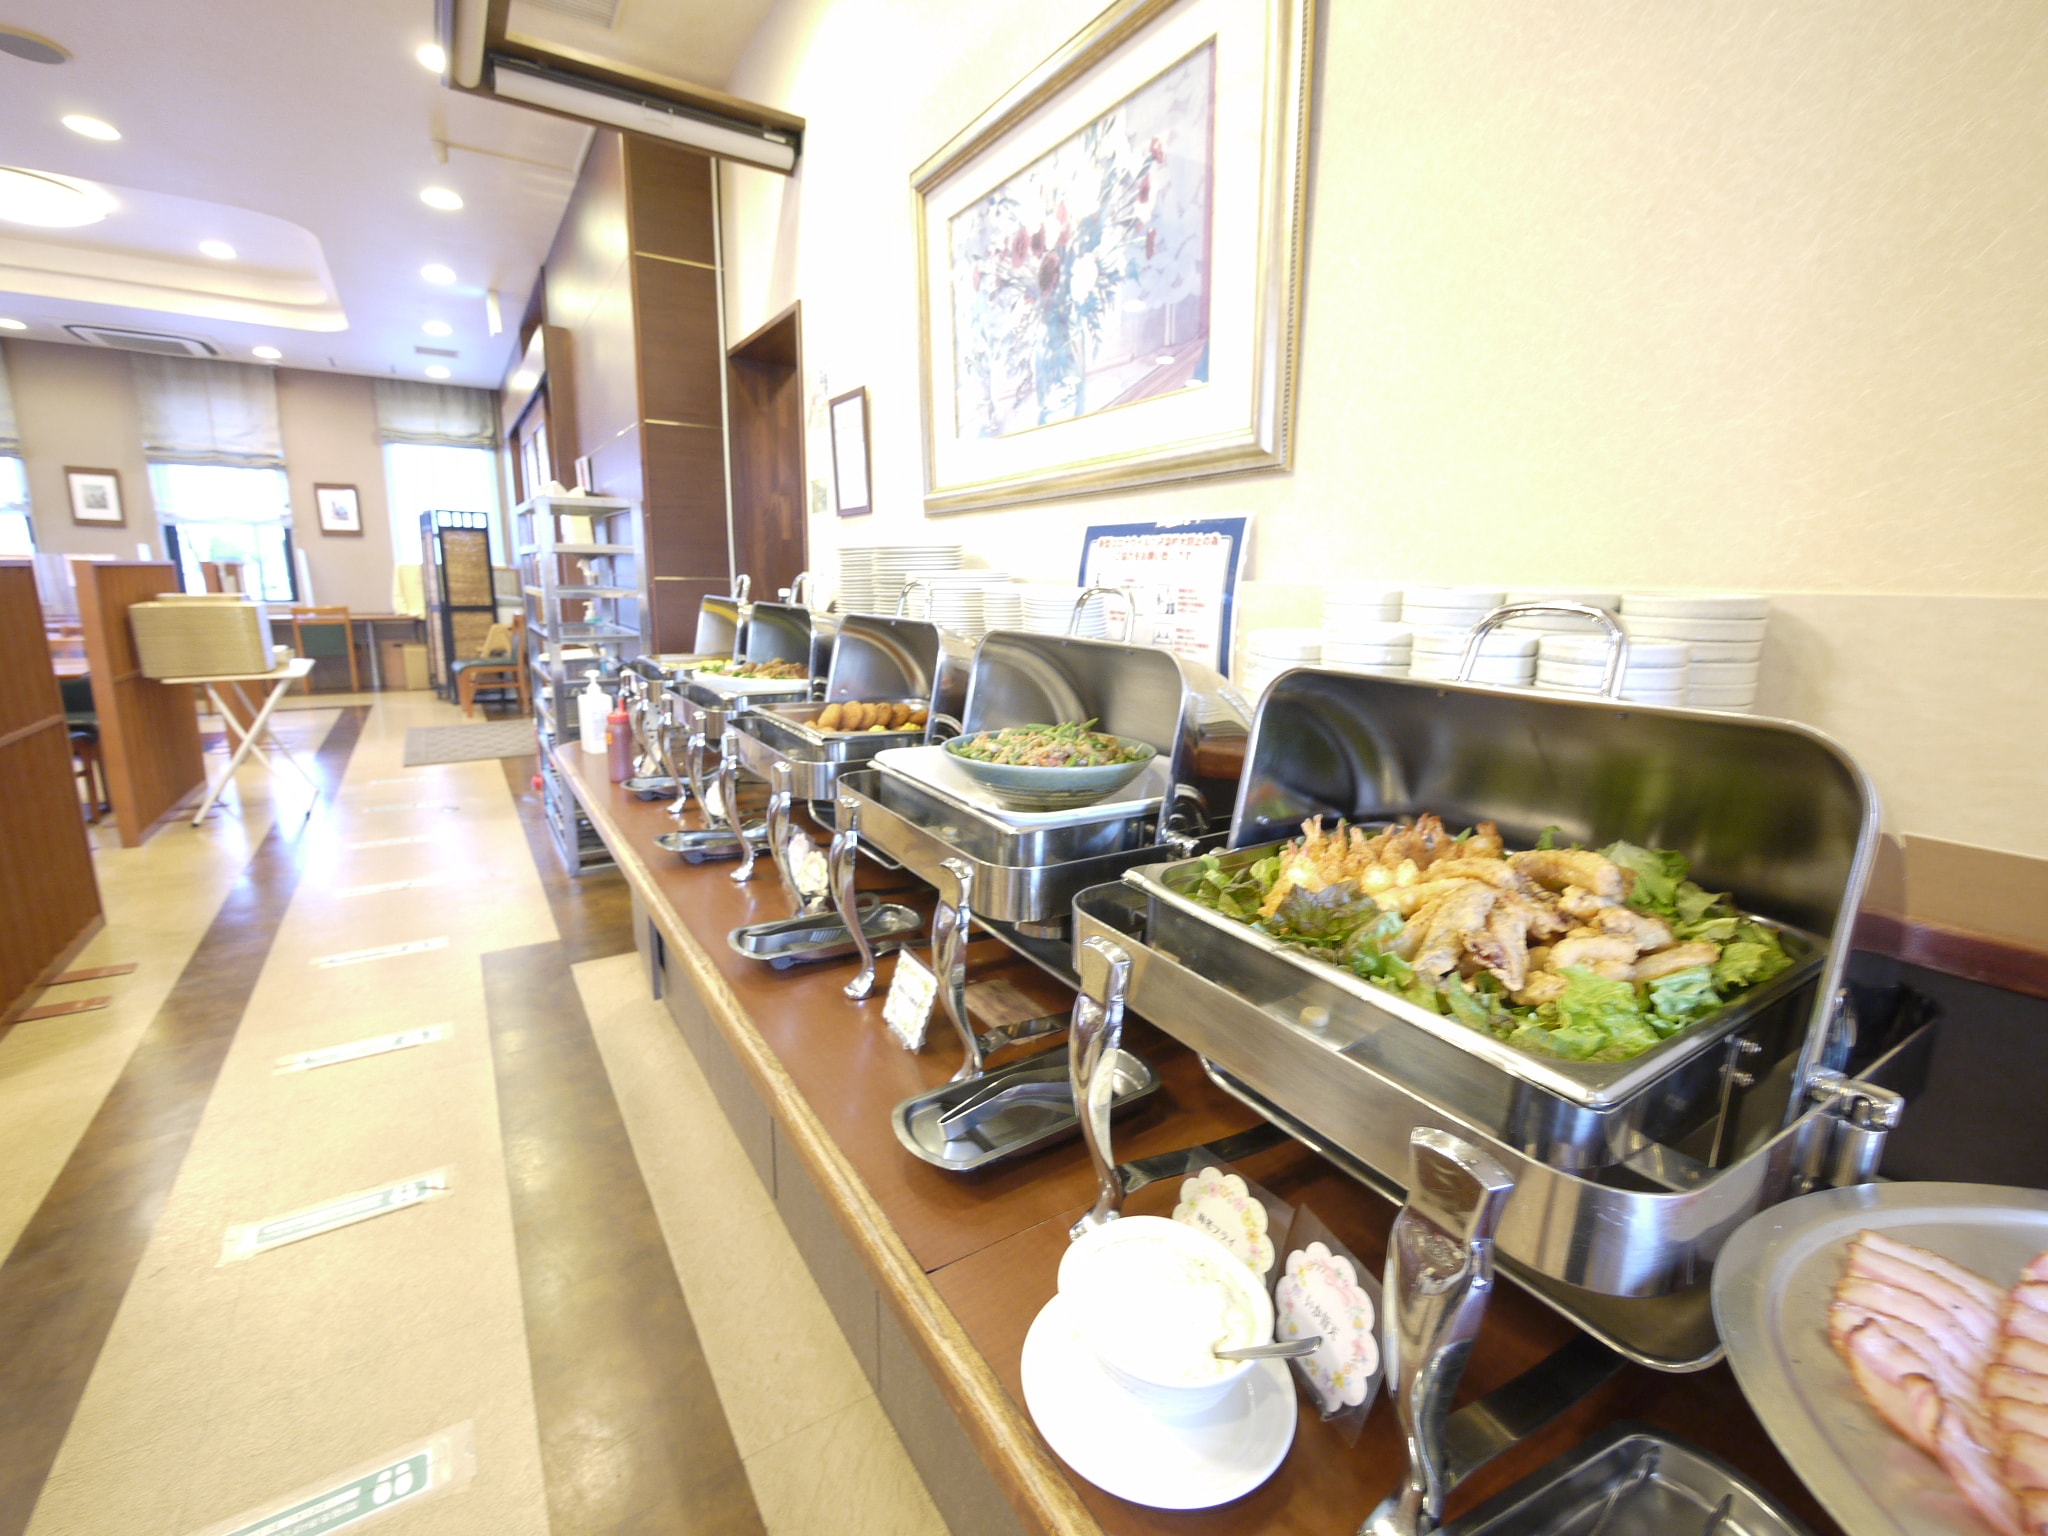 [อาหารเช้า] บุฟเฟ่ต์อาหารญี่ปุ่นและตะวันตก เวลา 6:30 น. - 9:00 น.